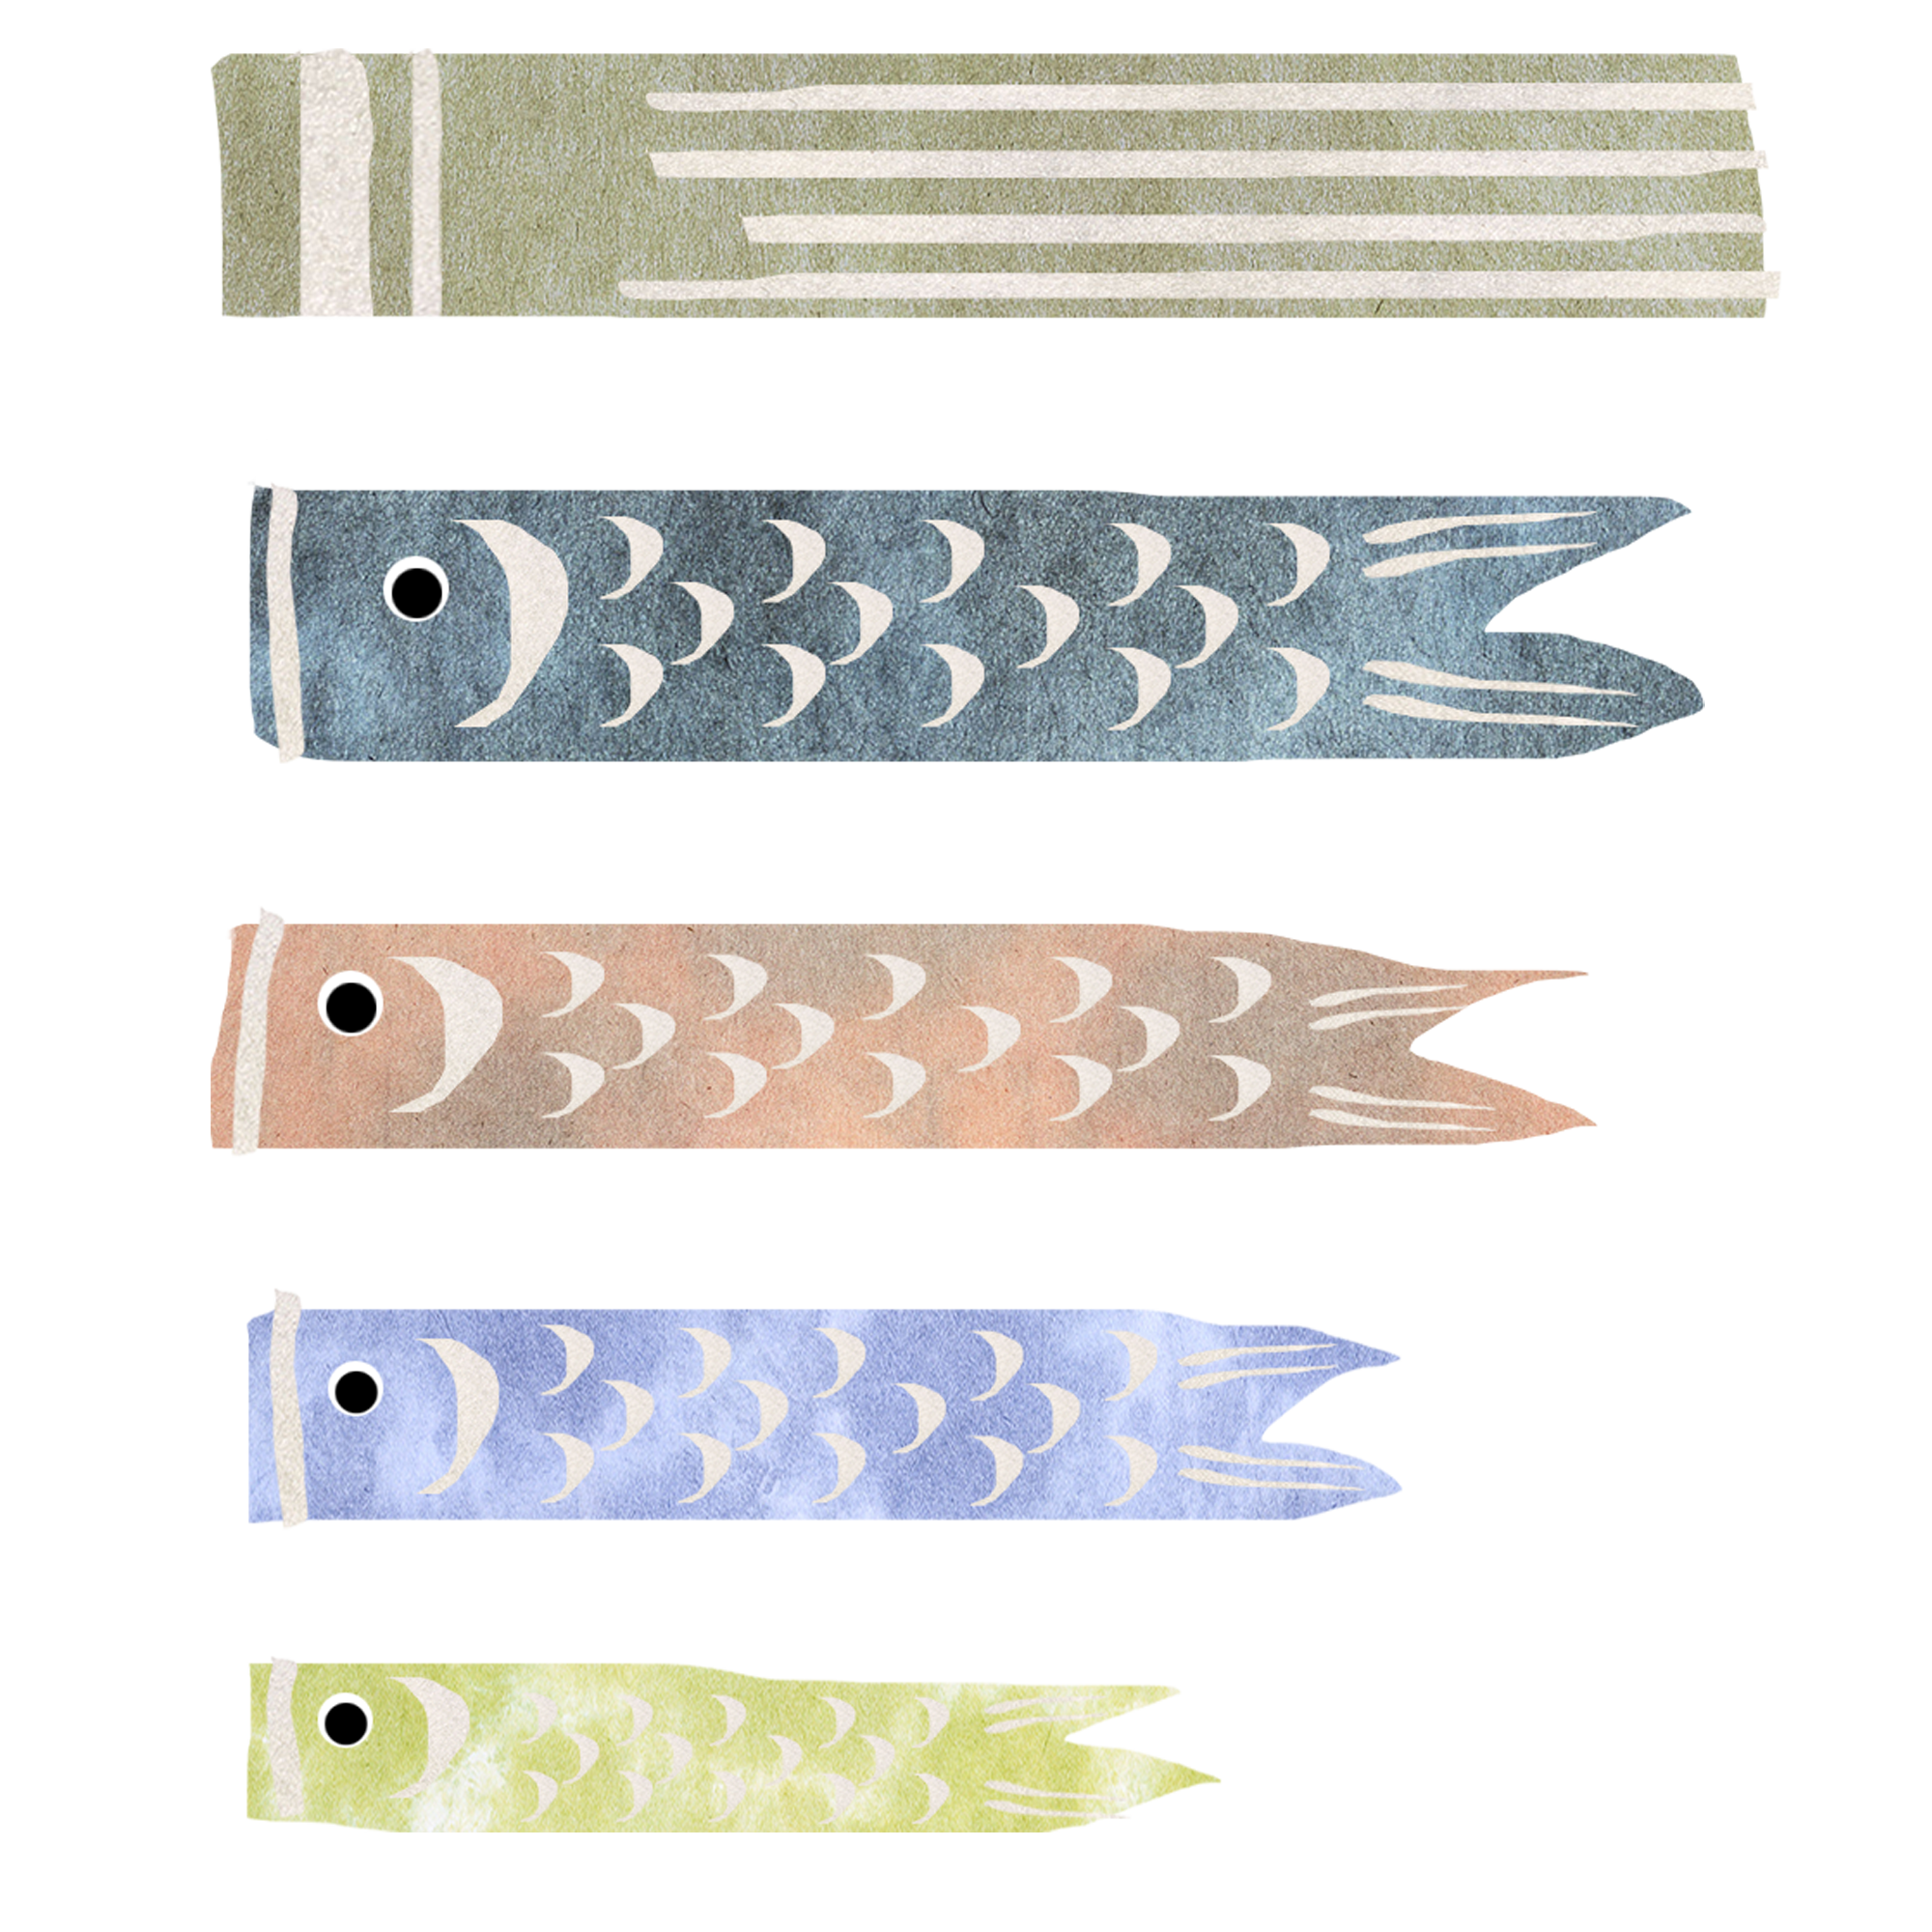 和紙で作った鯉のぼりのイラスト イラスト素材館